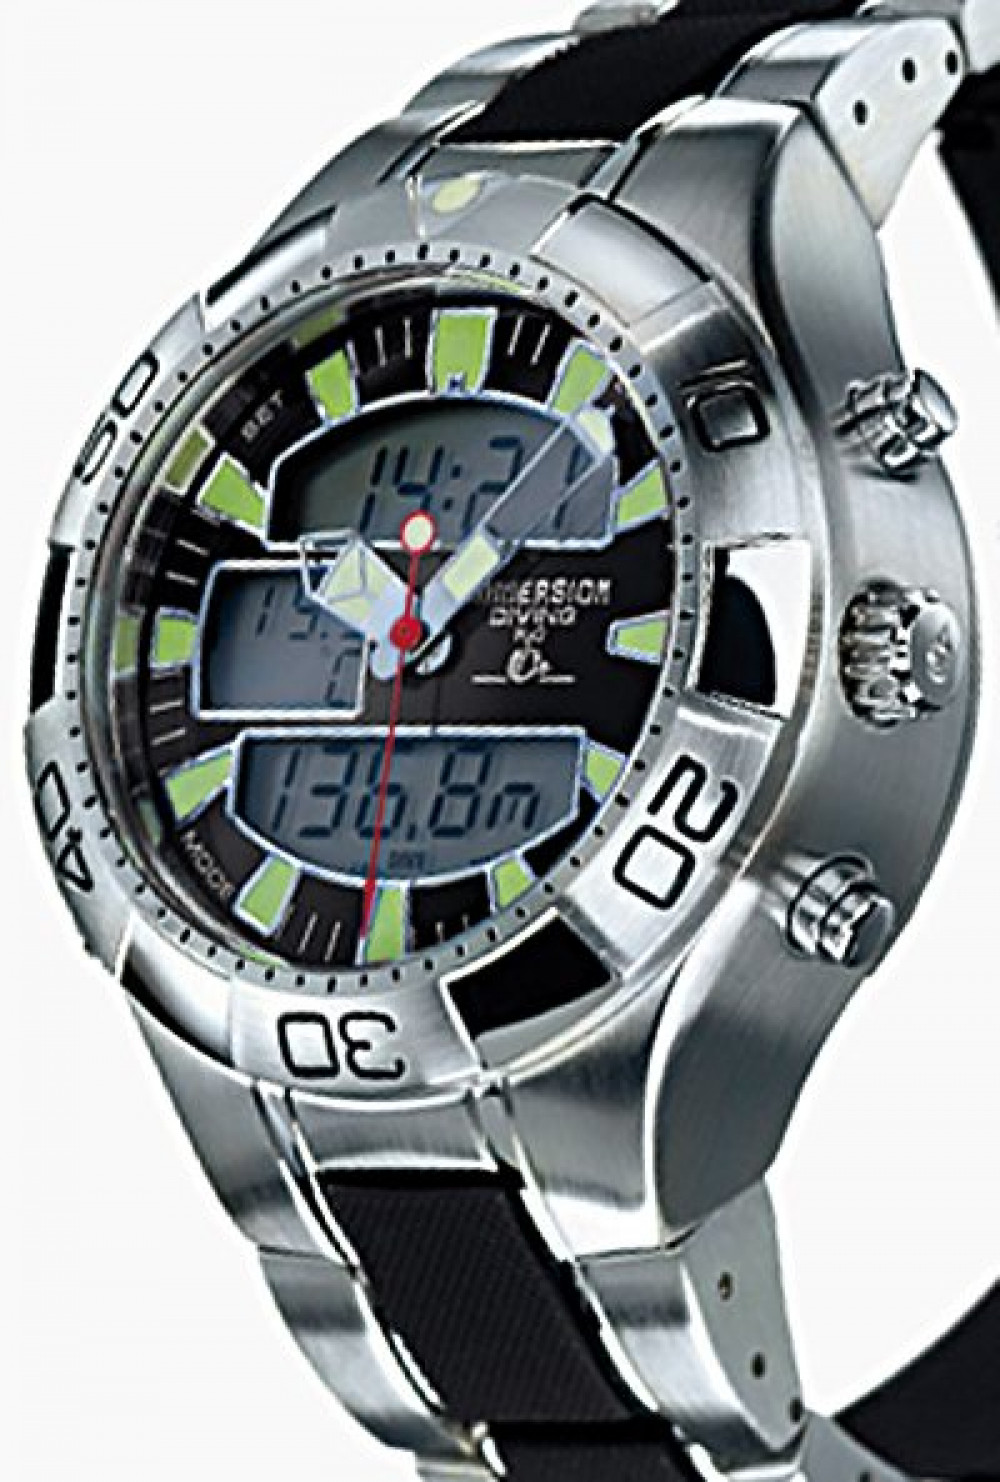 Zegarek firmy Immersion, model H2O